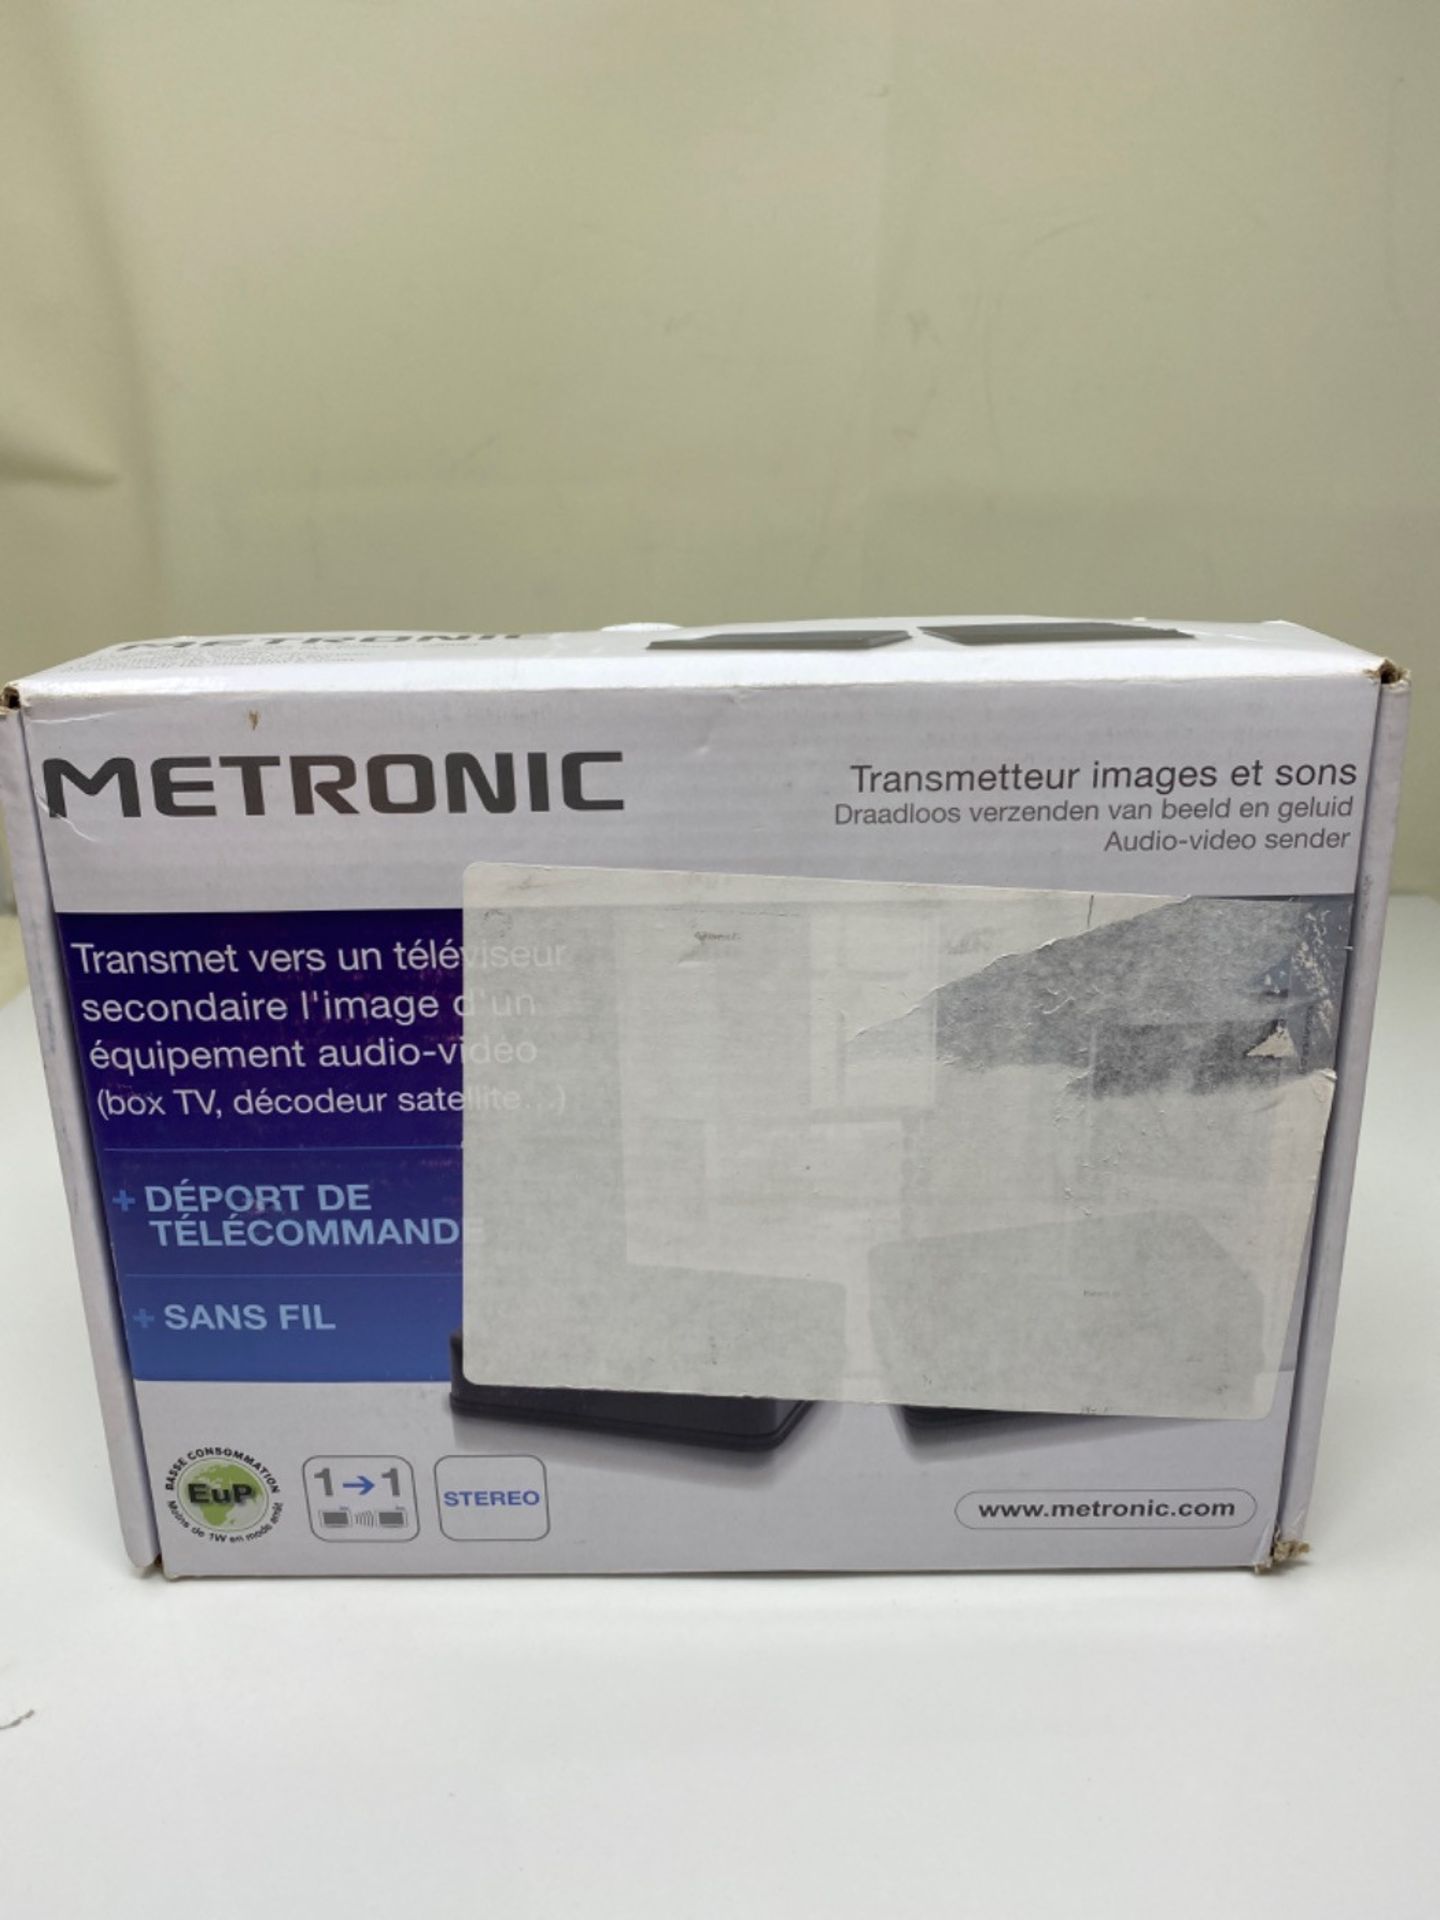 Metronic A/V Sender - Image 2 of 3